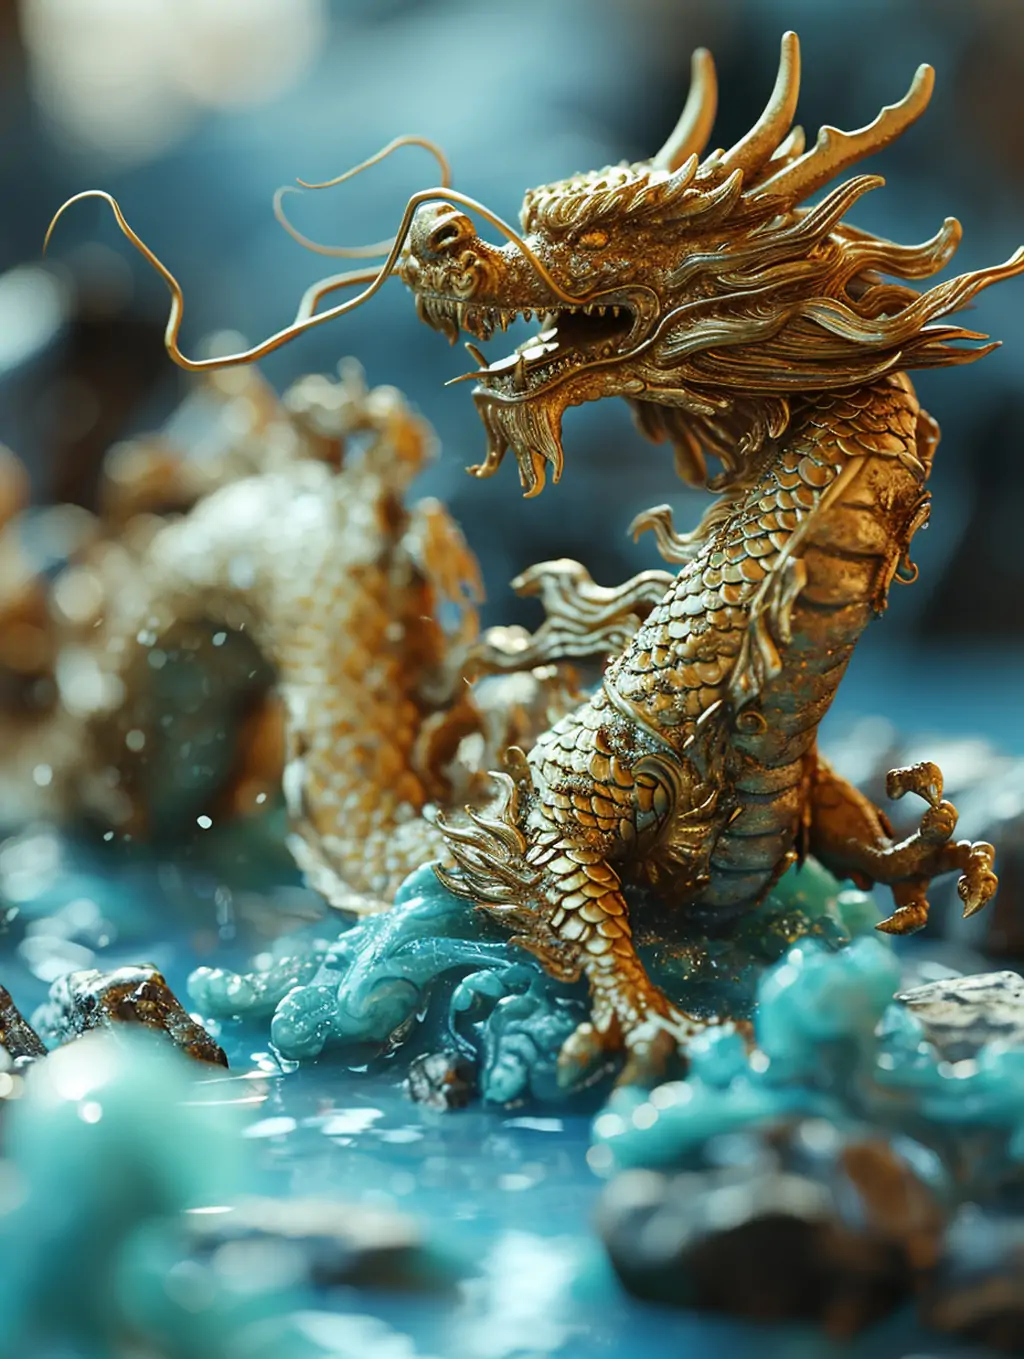 中国风3D立体超精细逼真金龙动物模型设计广告摄影海报midjourney关键词咒语 - Ai宇宙吧--Ai宇宙吧-